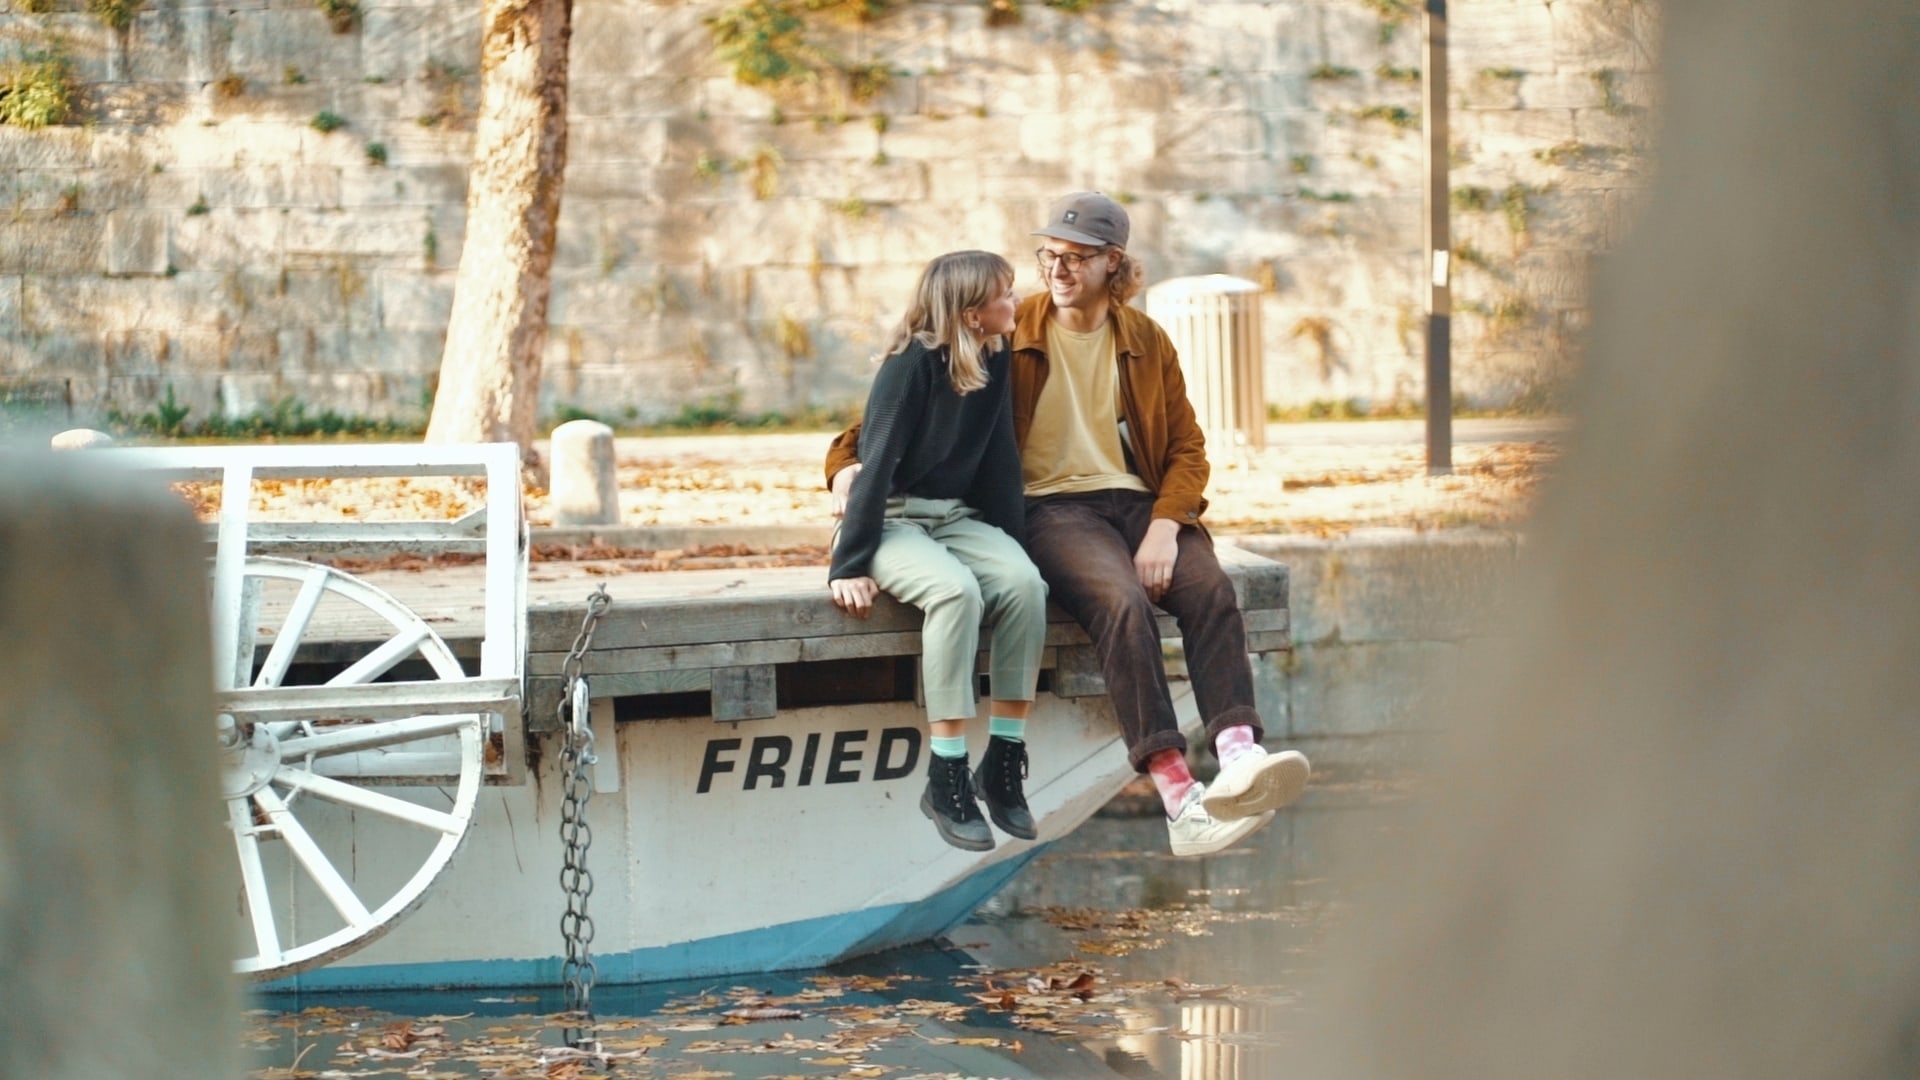 Verliebtes Paar im Herbst auf einem Boot sitzend am Lendkanal